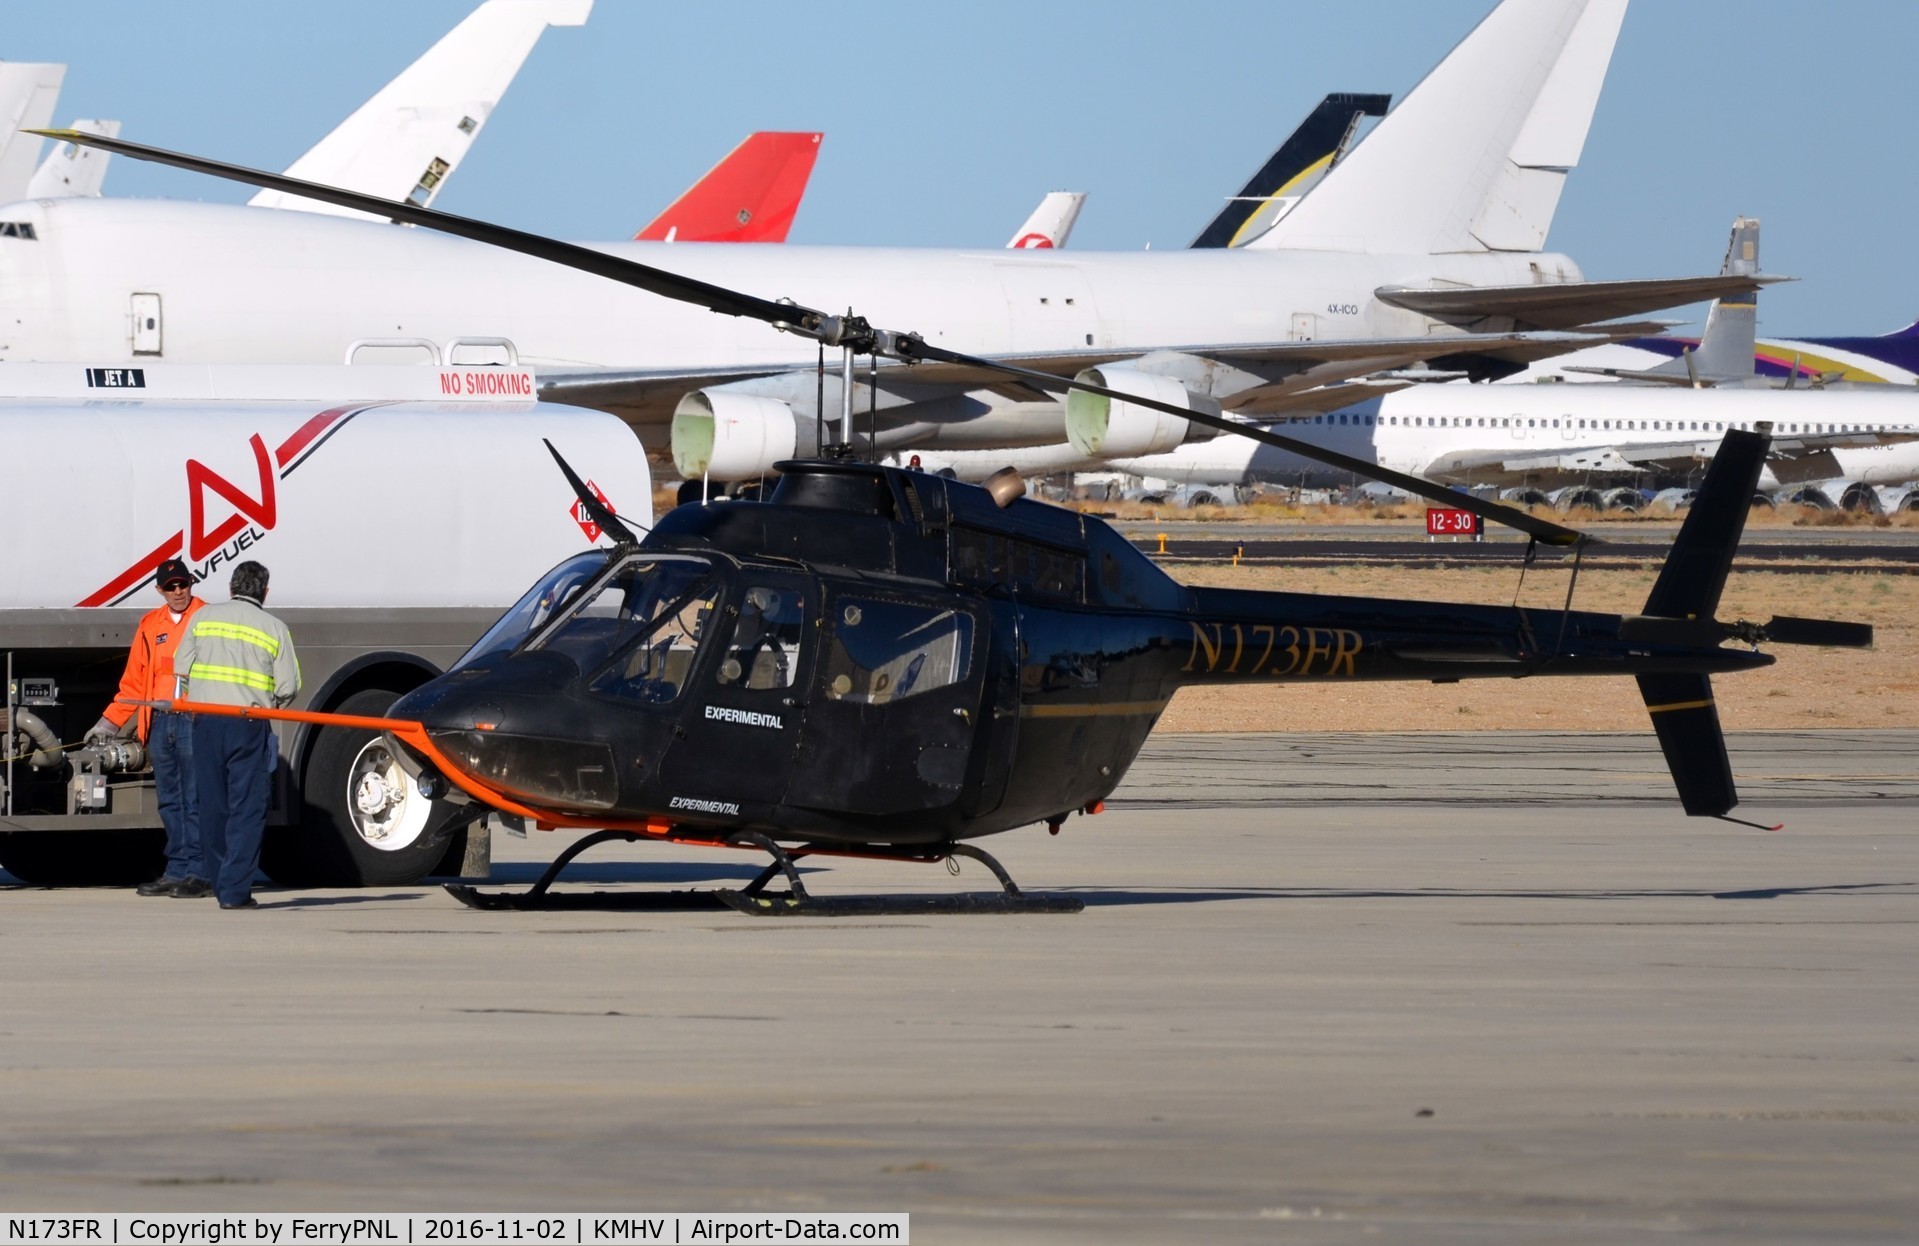 N173FR, 2007 Flight Research Inc FRI H58C C/N FRI 004, Flight Research Inc converted Bell 206